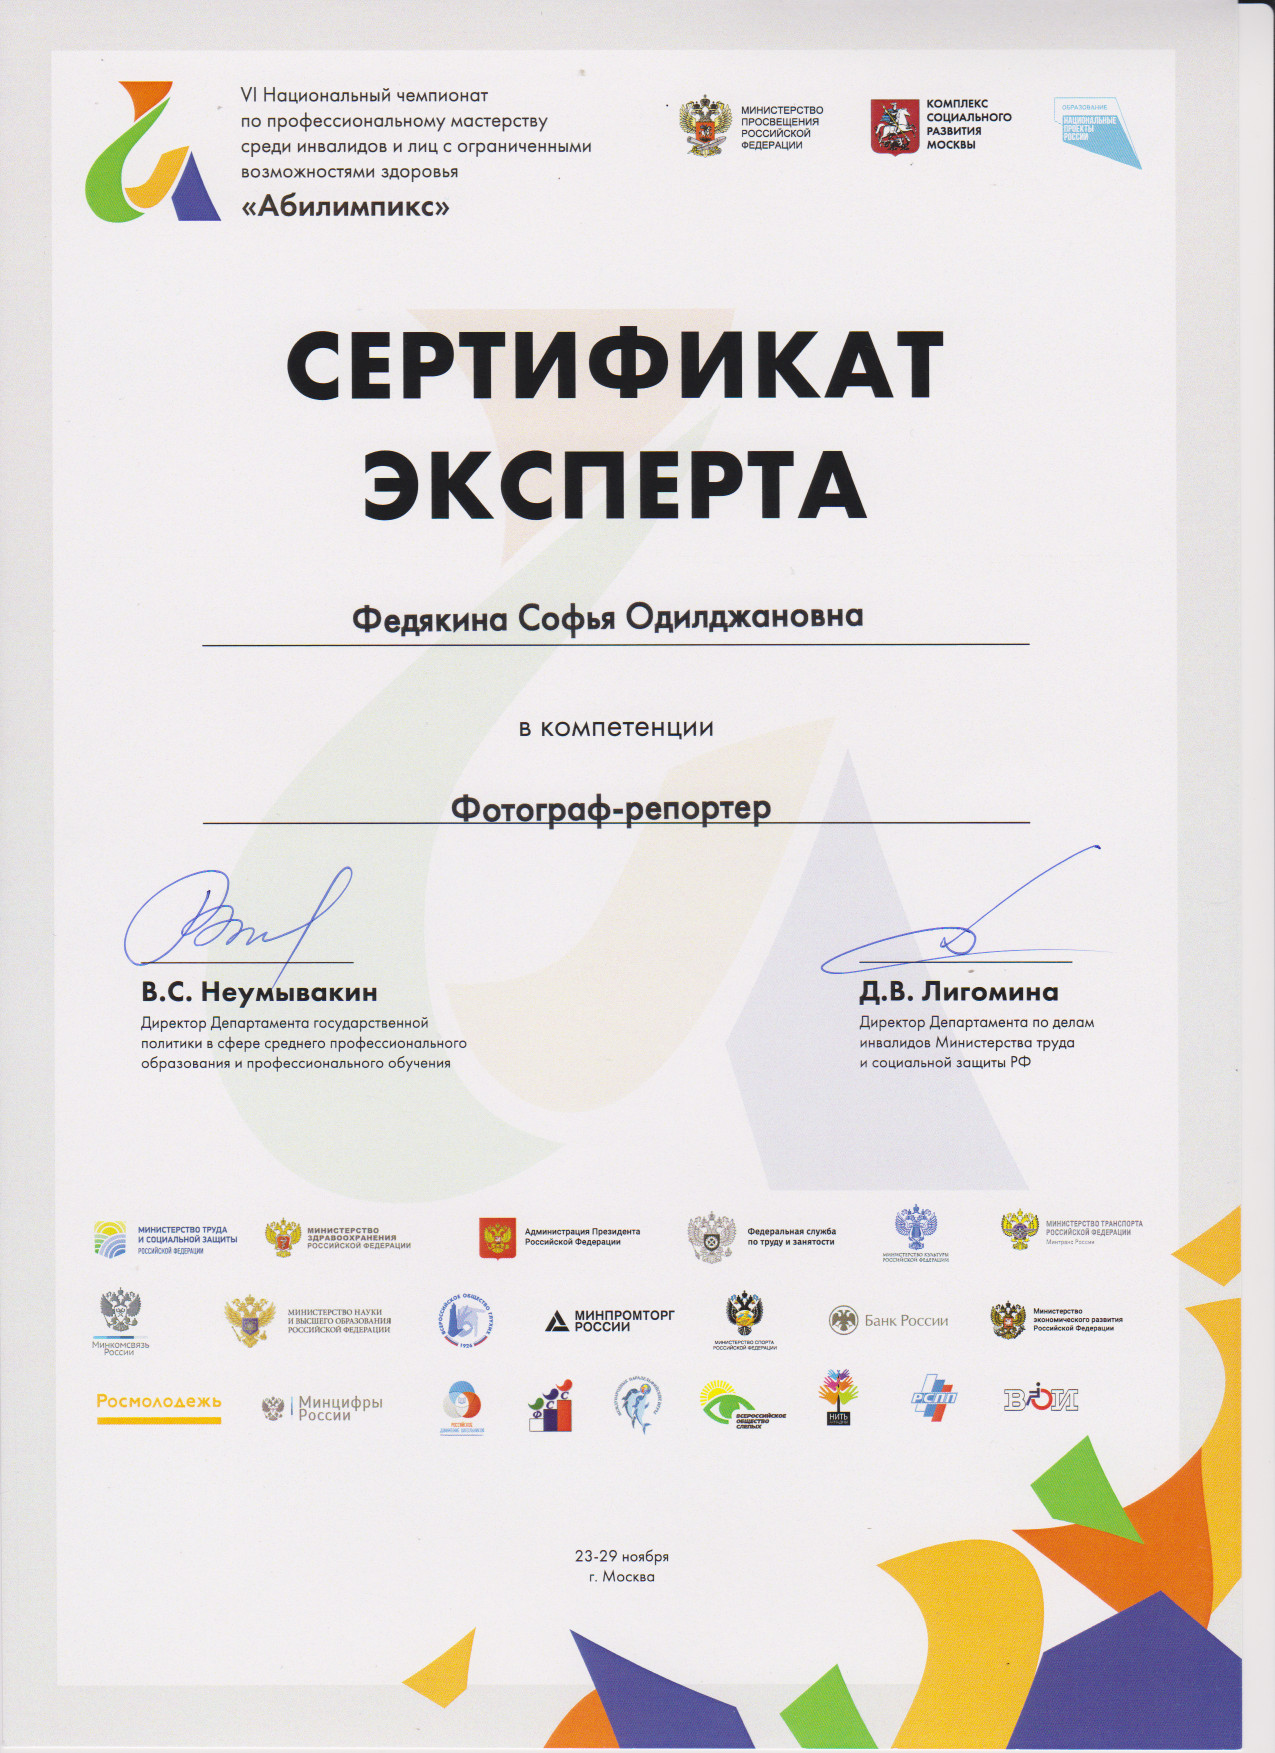 Сертификат участника по компетенции 